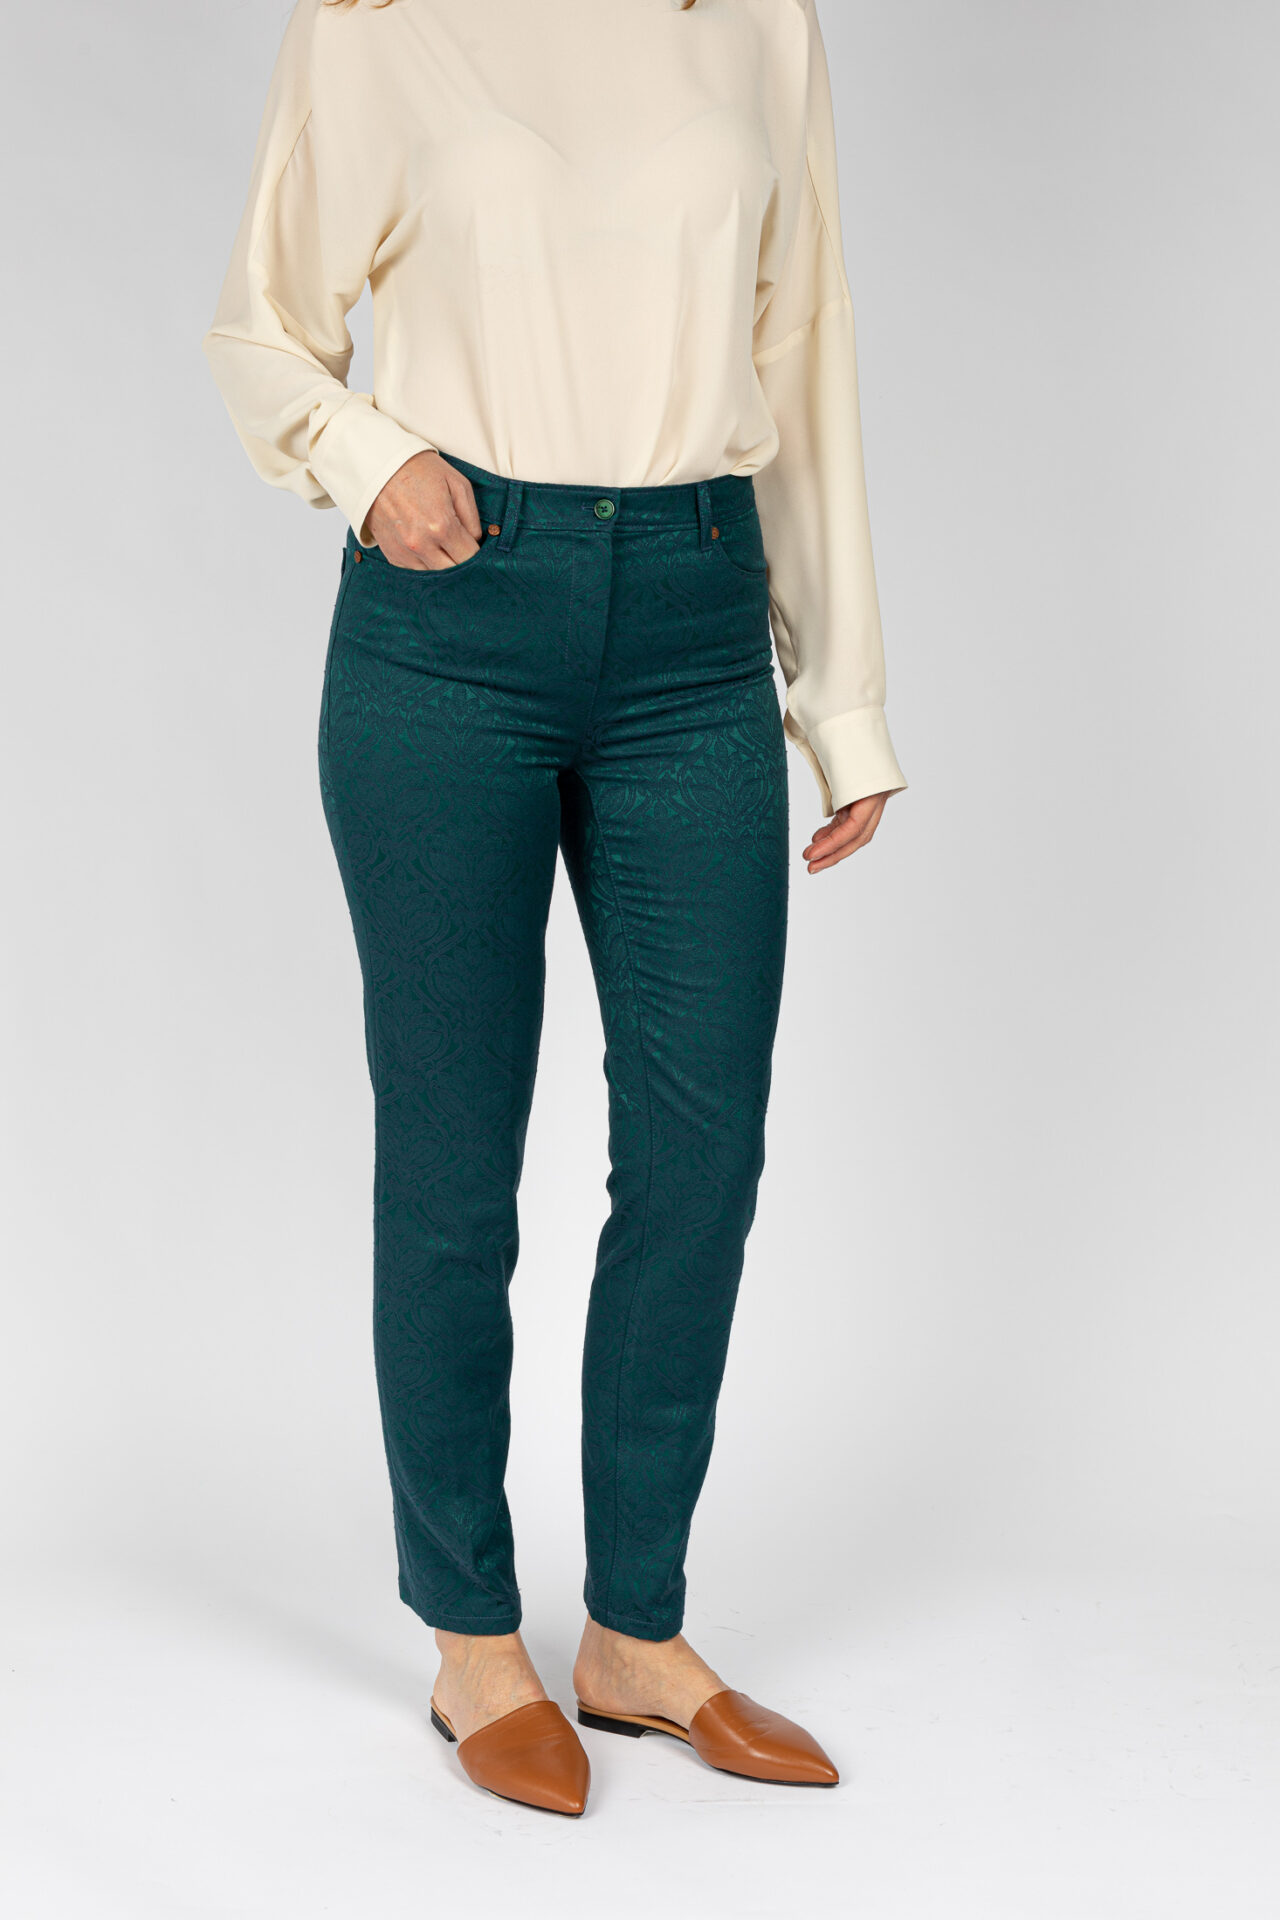 Pantaloni linea Jeans tessuto jacquard disegno fiore colore verde P19950GT - 2